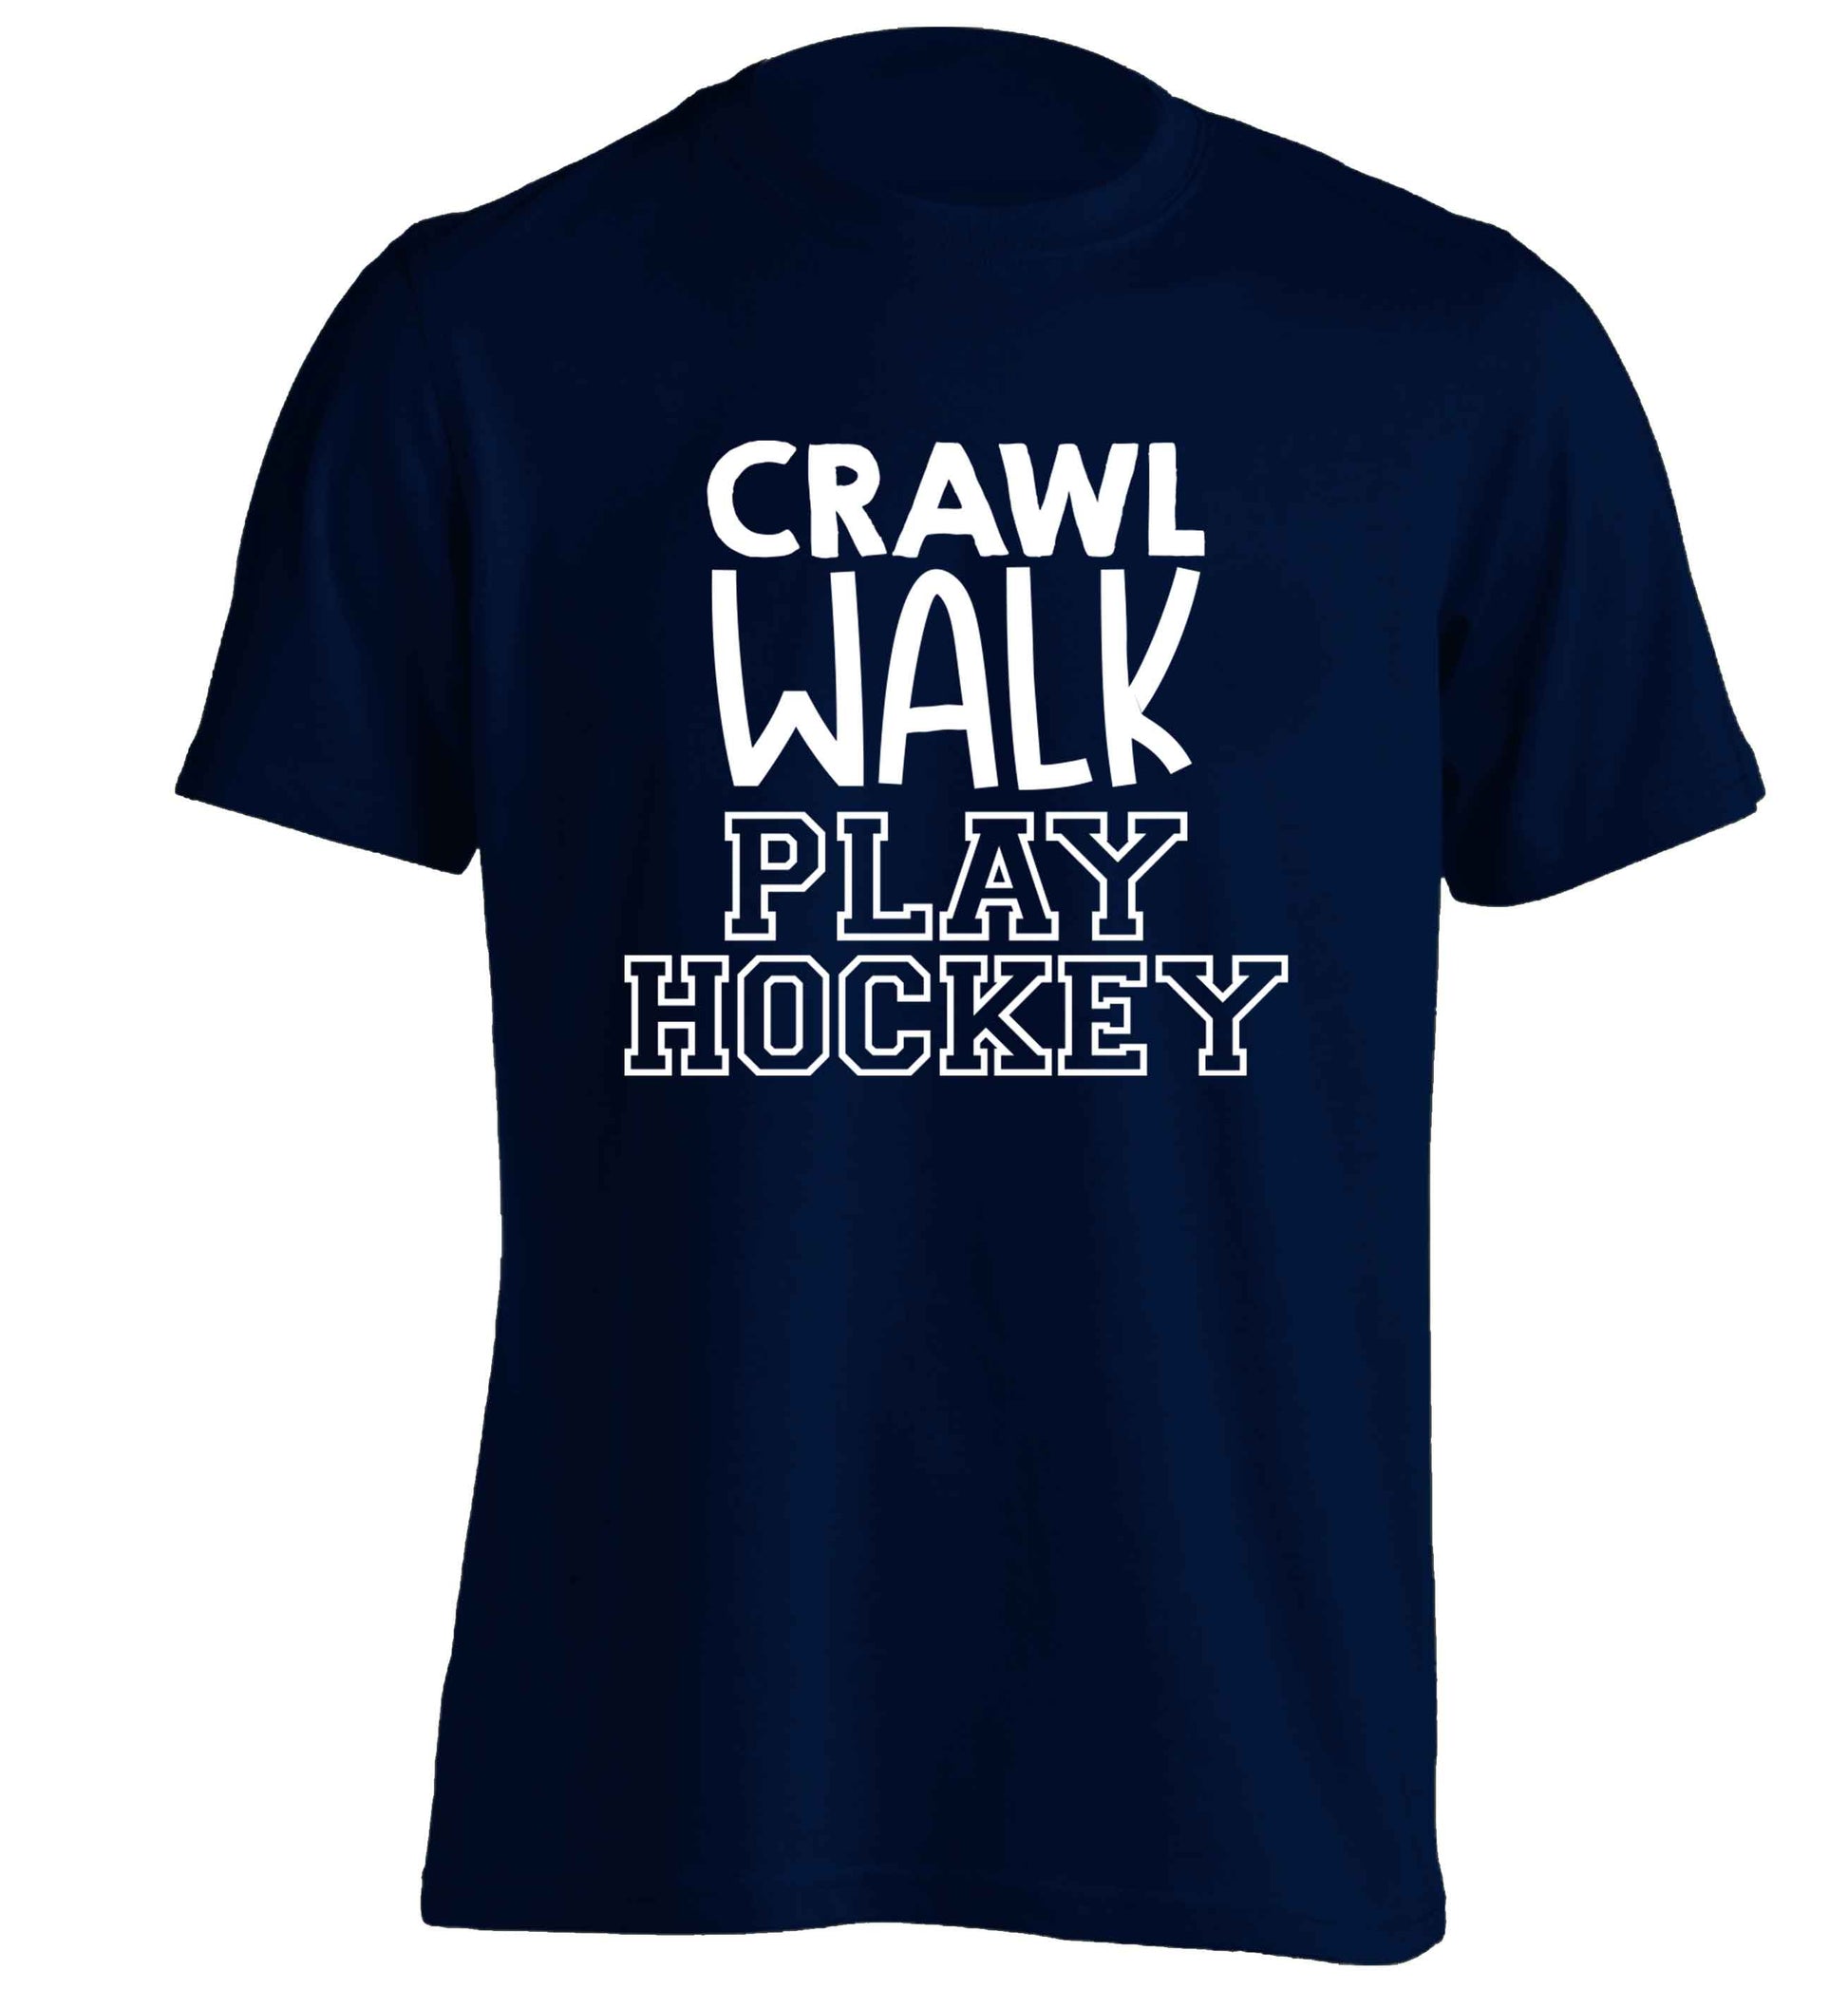 Crawl walk play hockey adults unisex navy Tshirt 2XL